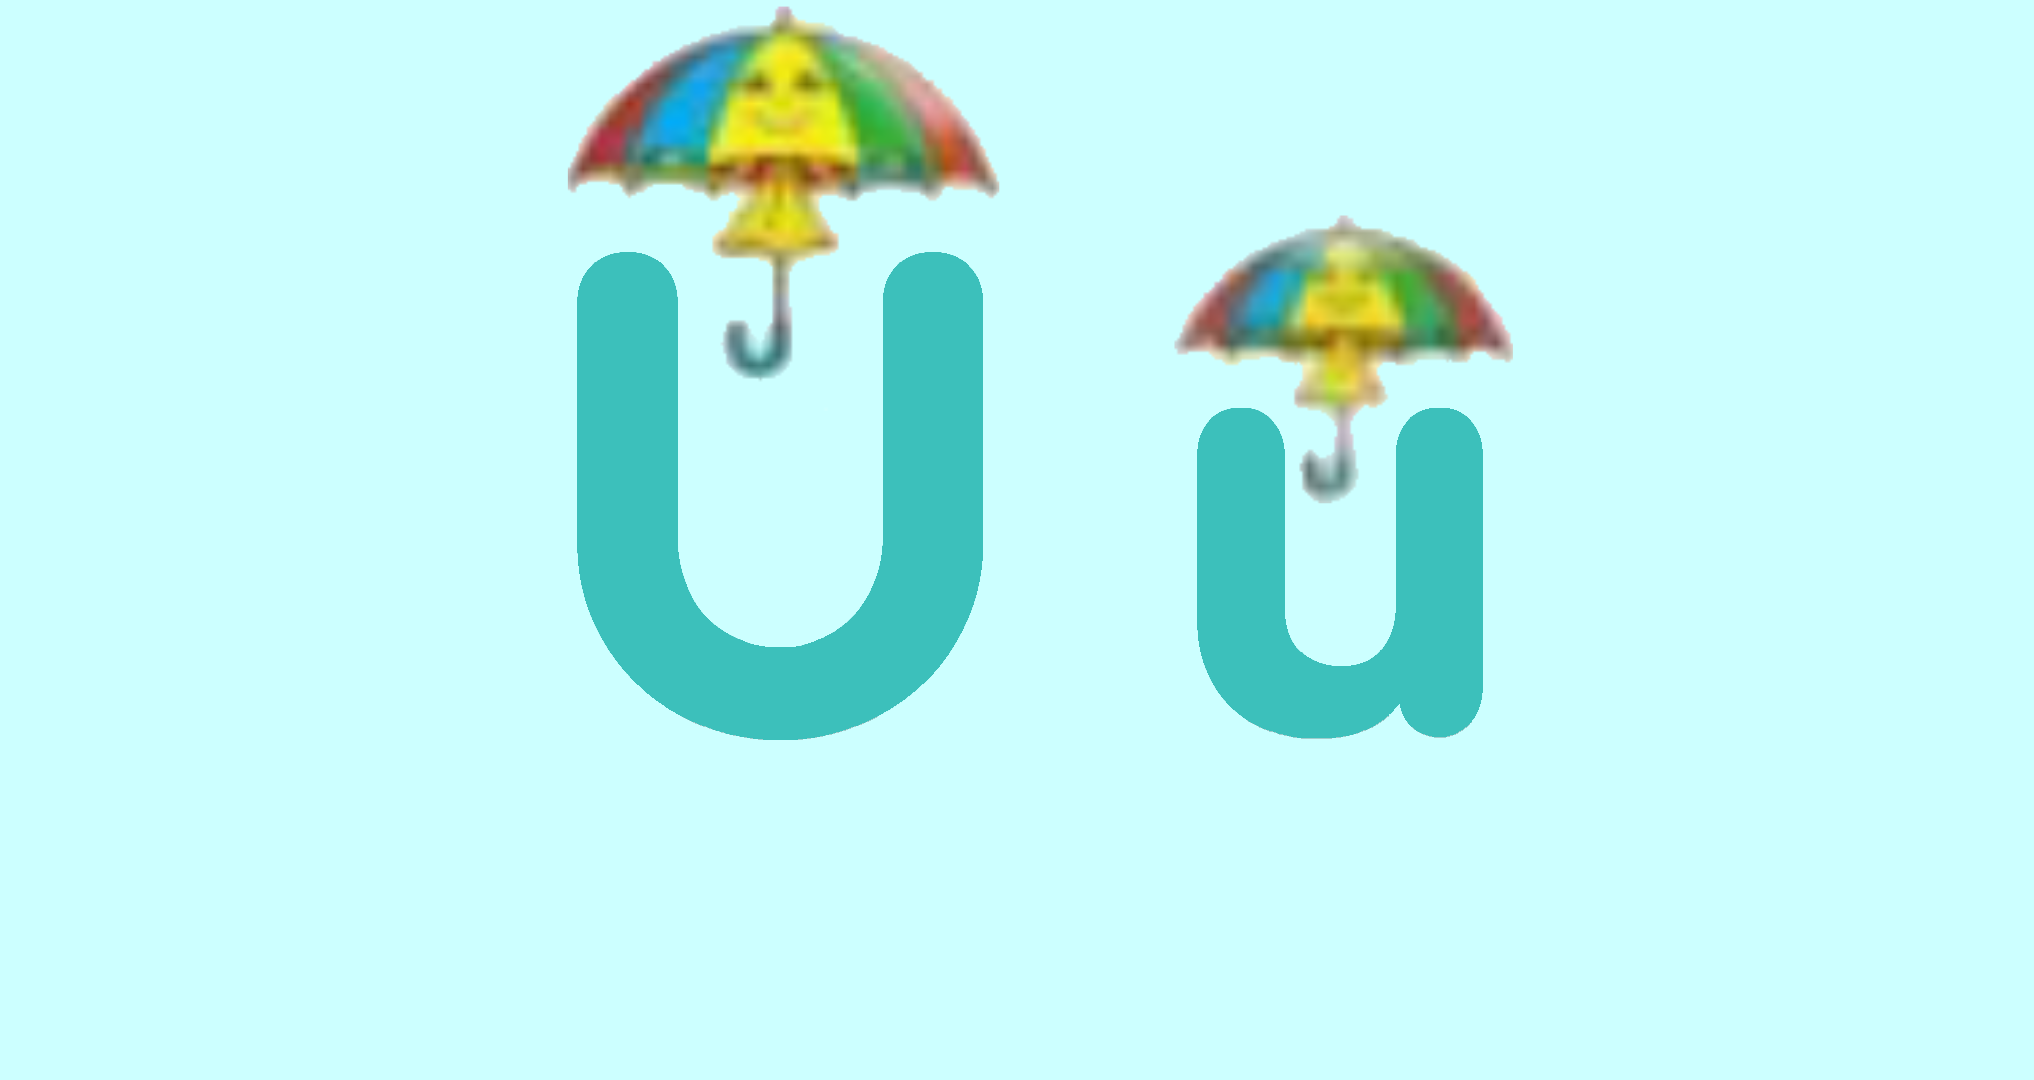 uppy-umbrella-letterland-abc-fan-art-43377767-fanpop